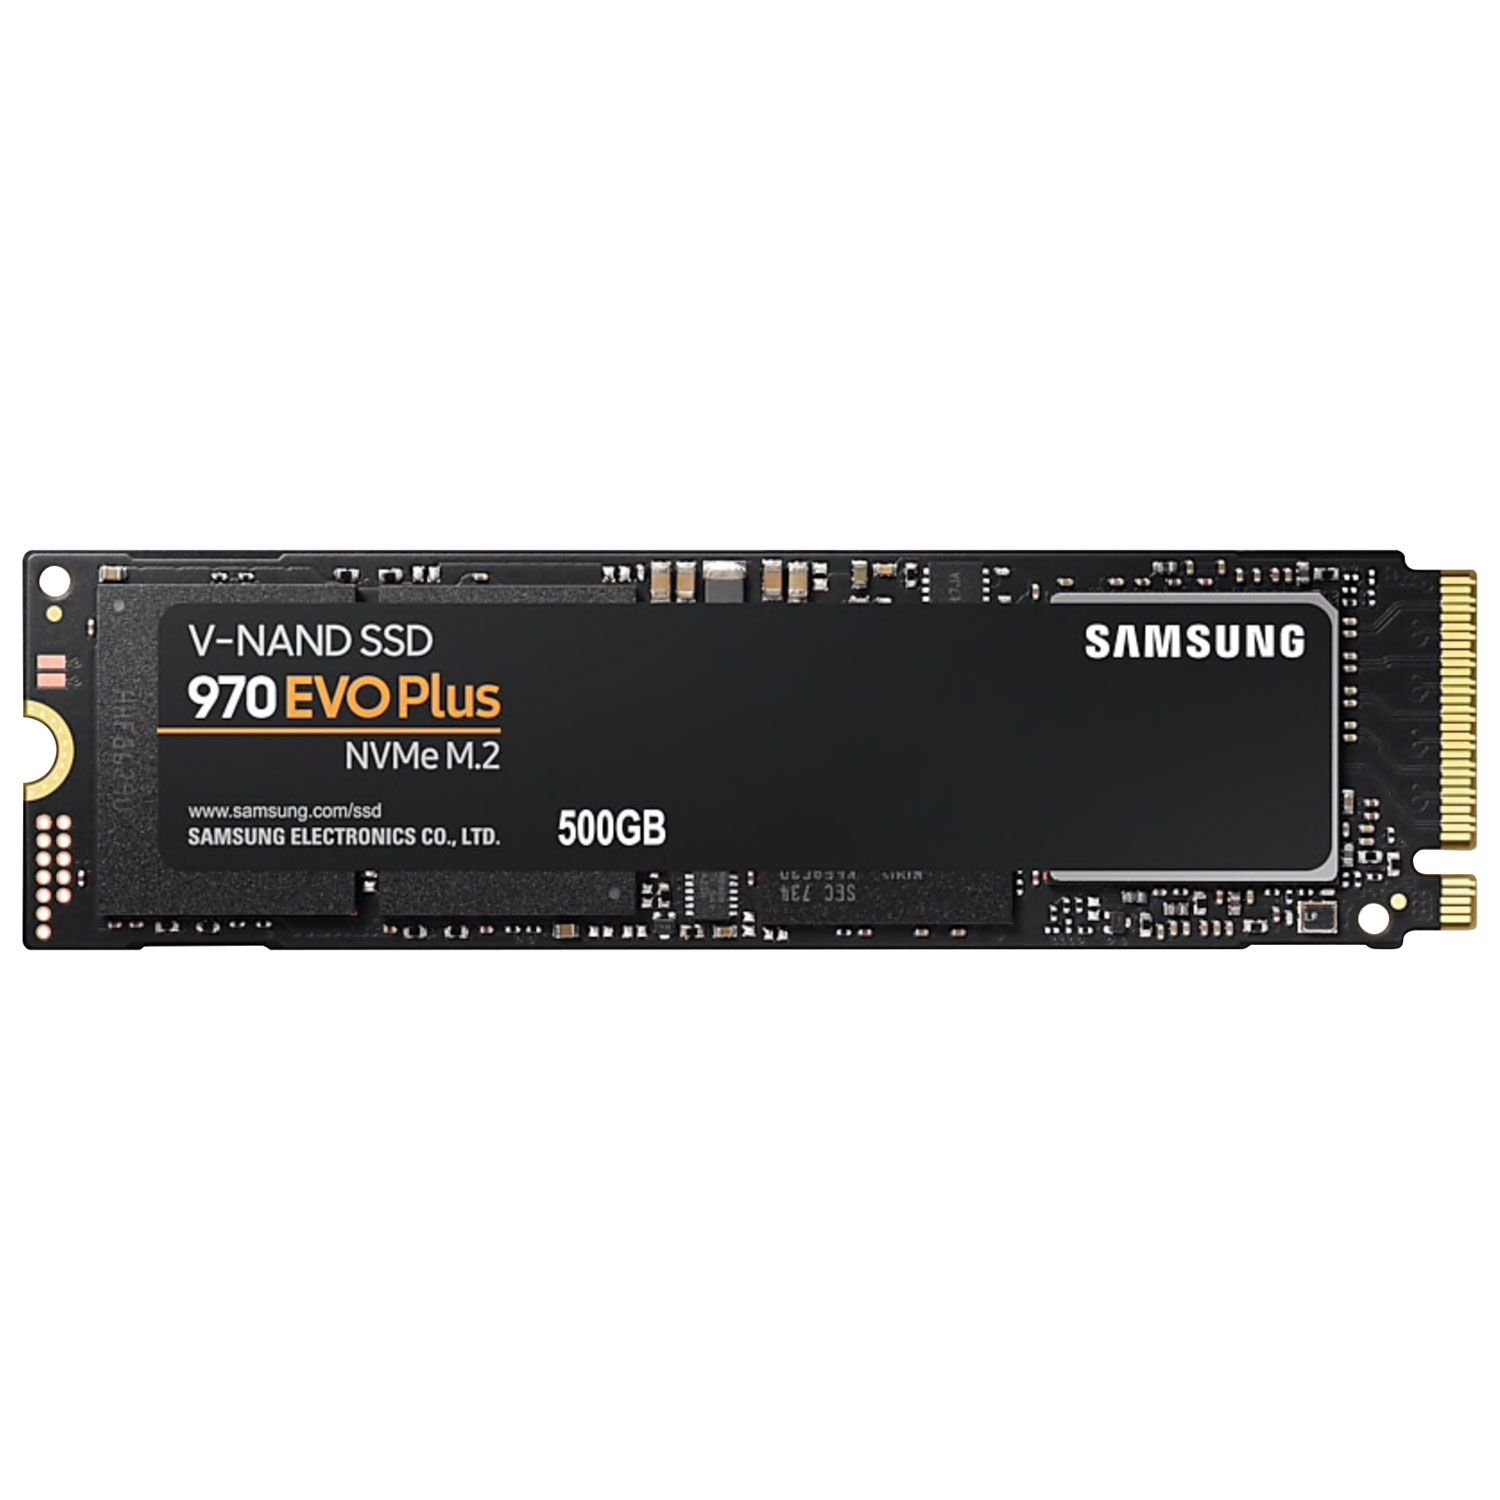 Samsung 970 EVO Plus 500GB M.2 NVMe Internal Solid State Drive (MZ-V7S500B/AM) - English